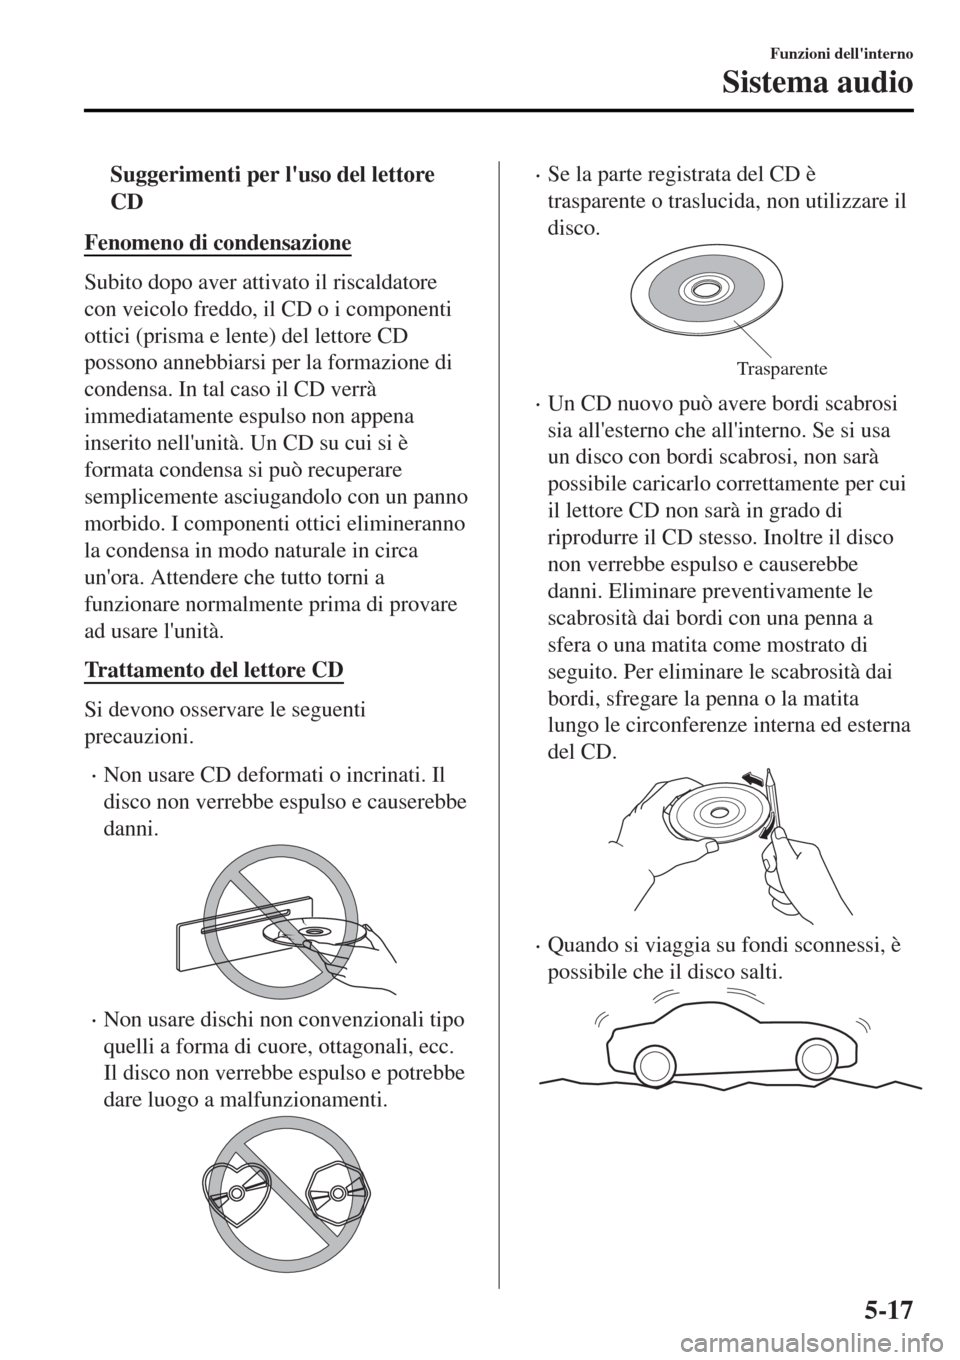 MAZDA MODEL MX-5 2015  Manuale del proprietario (in Italian) tSuggerimenti per luso del lettore
CD
Fenomeno di condensazione
Subito dopo aver attivato il riscaldatore
con veicolo freddo, il CD o i componenti
ottici (prisma e lente) del lettore CD
possono anneb